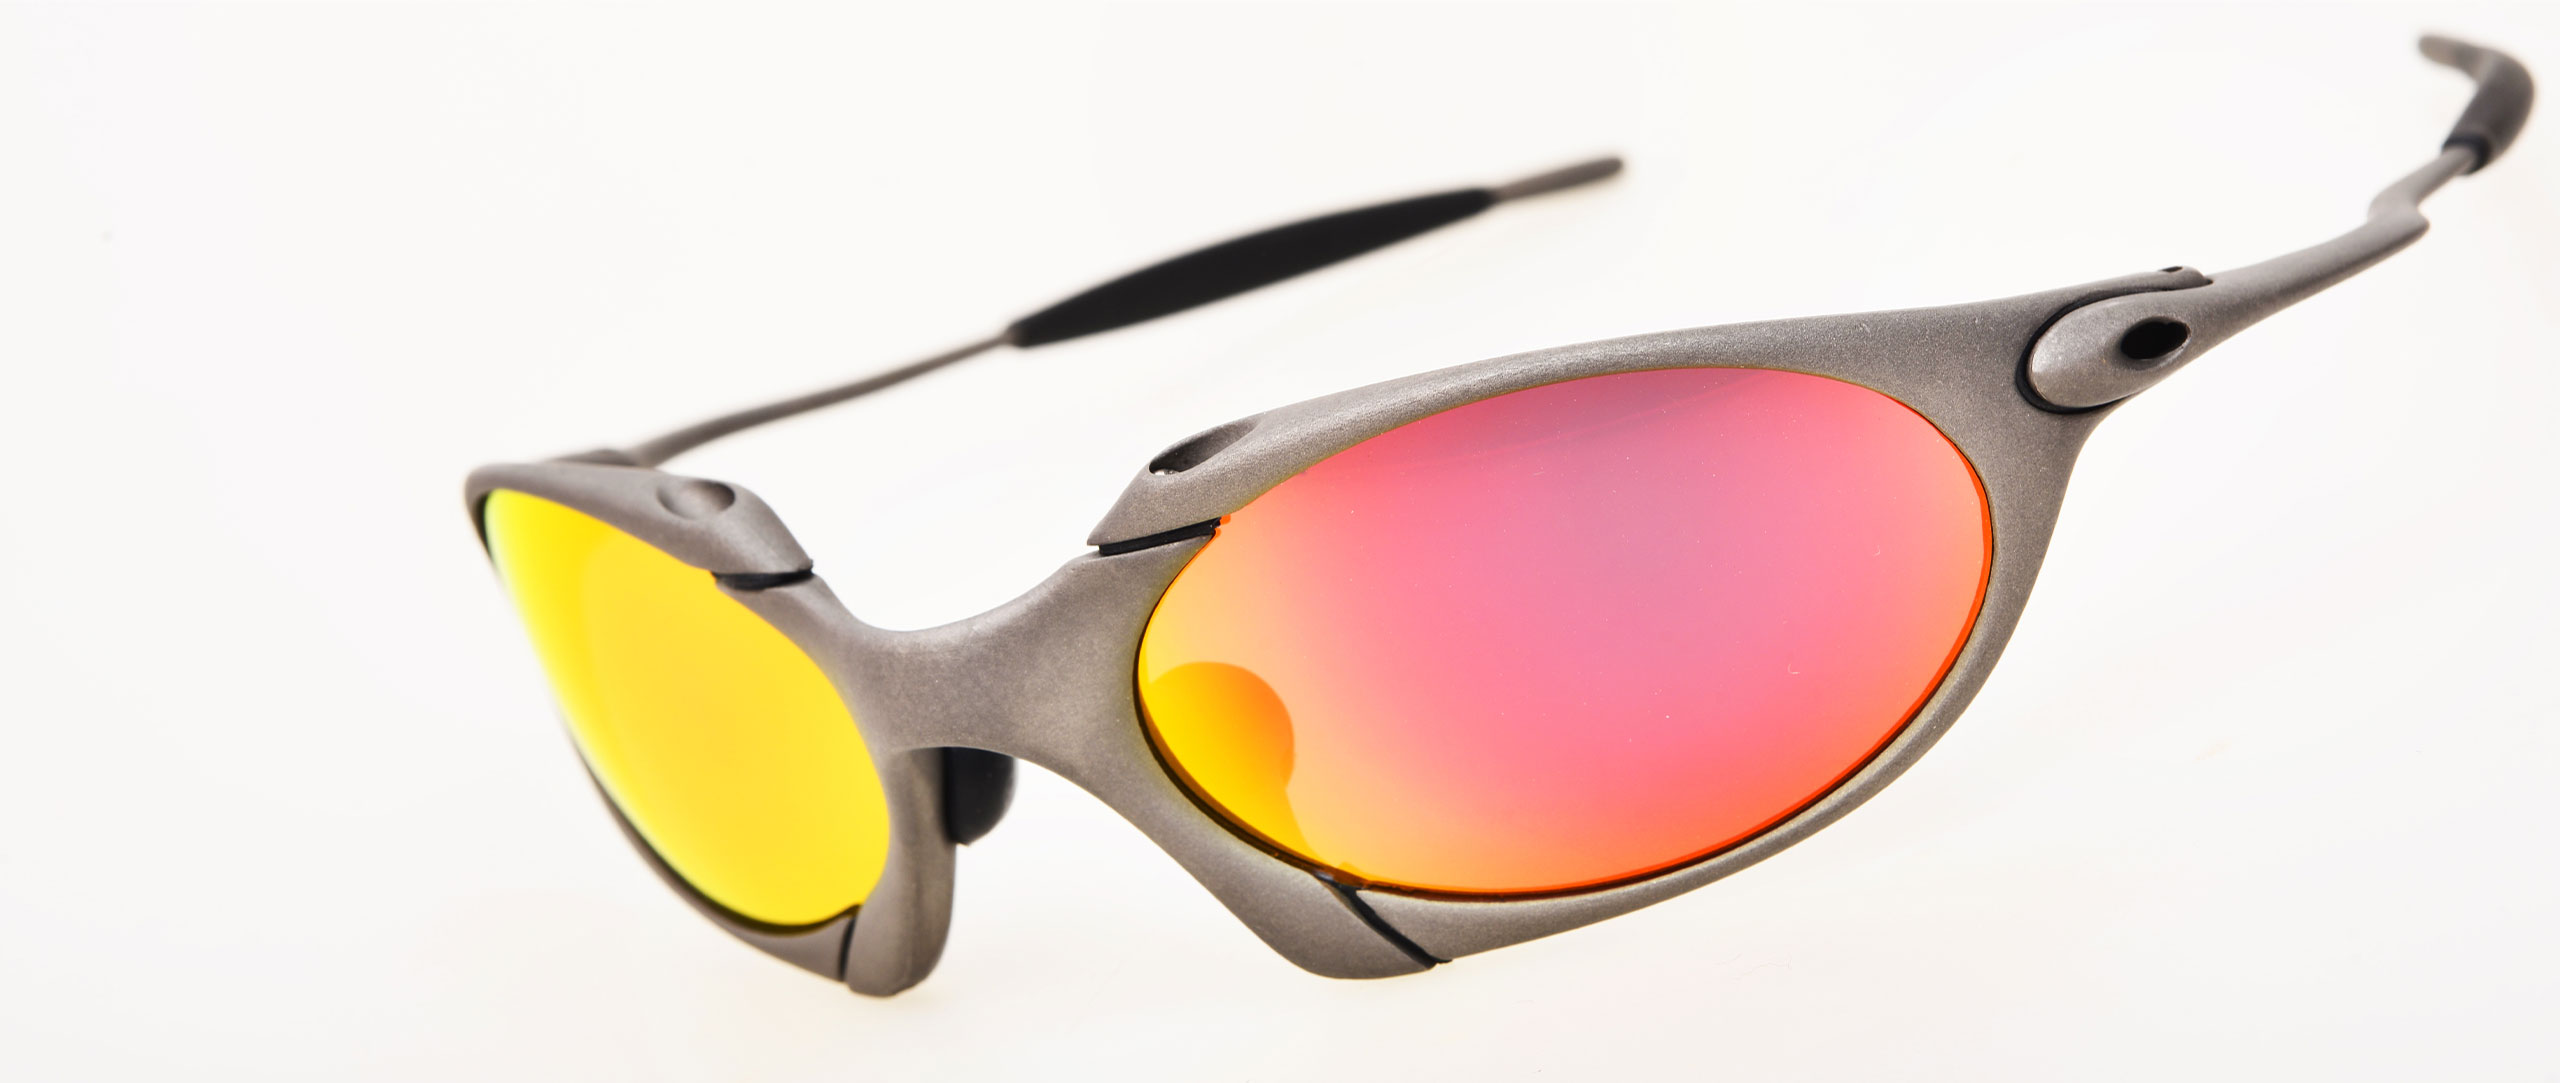 oakley sunglasses styles list